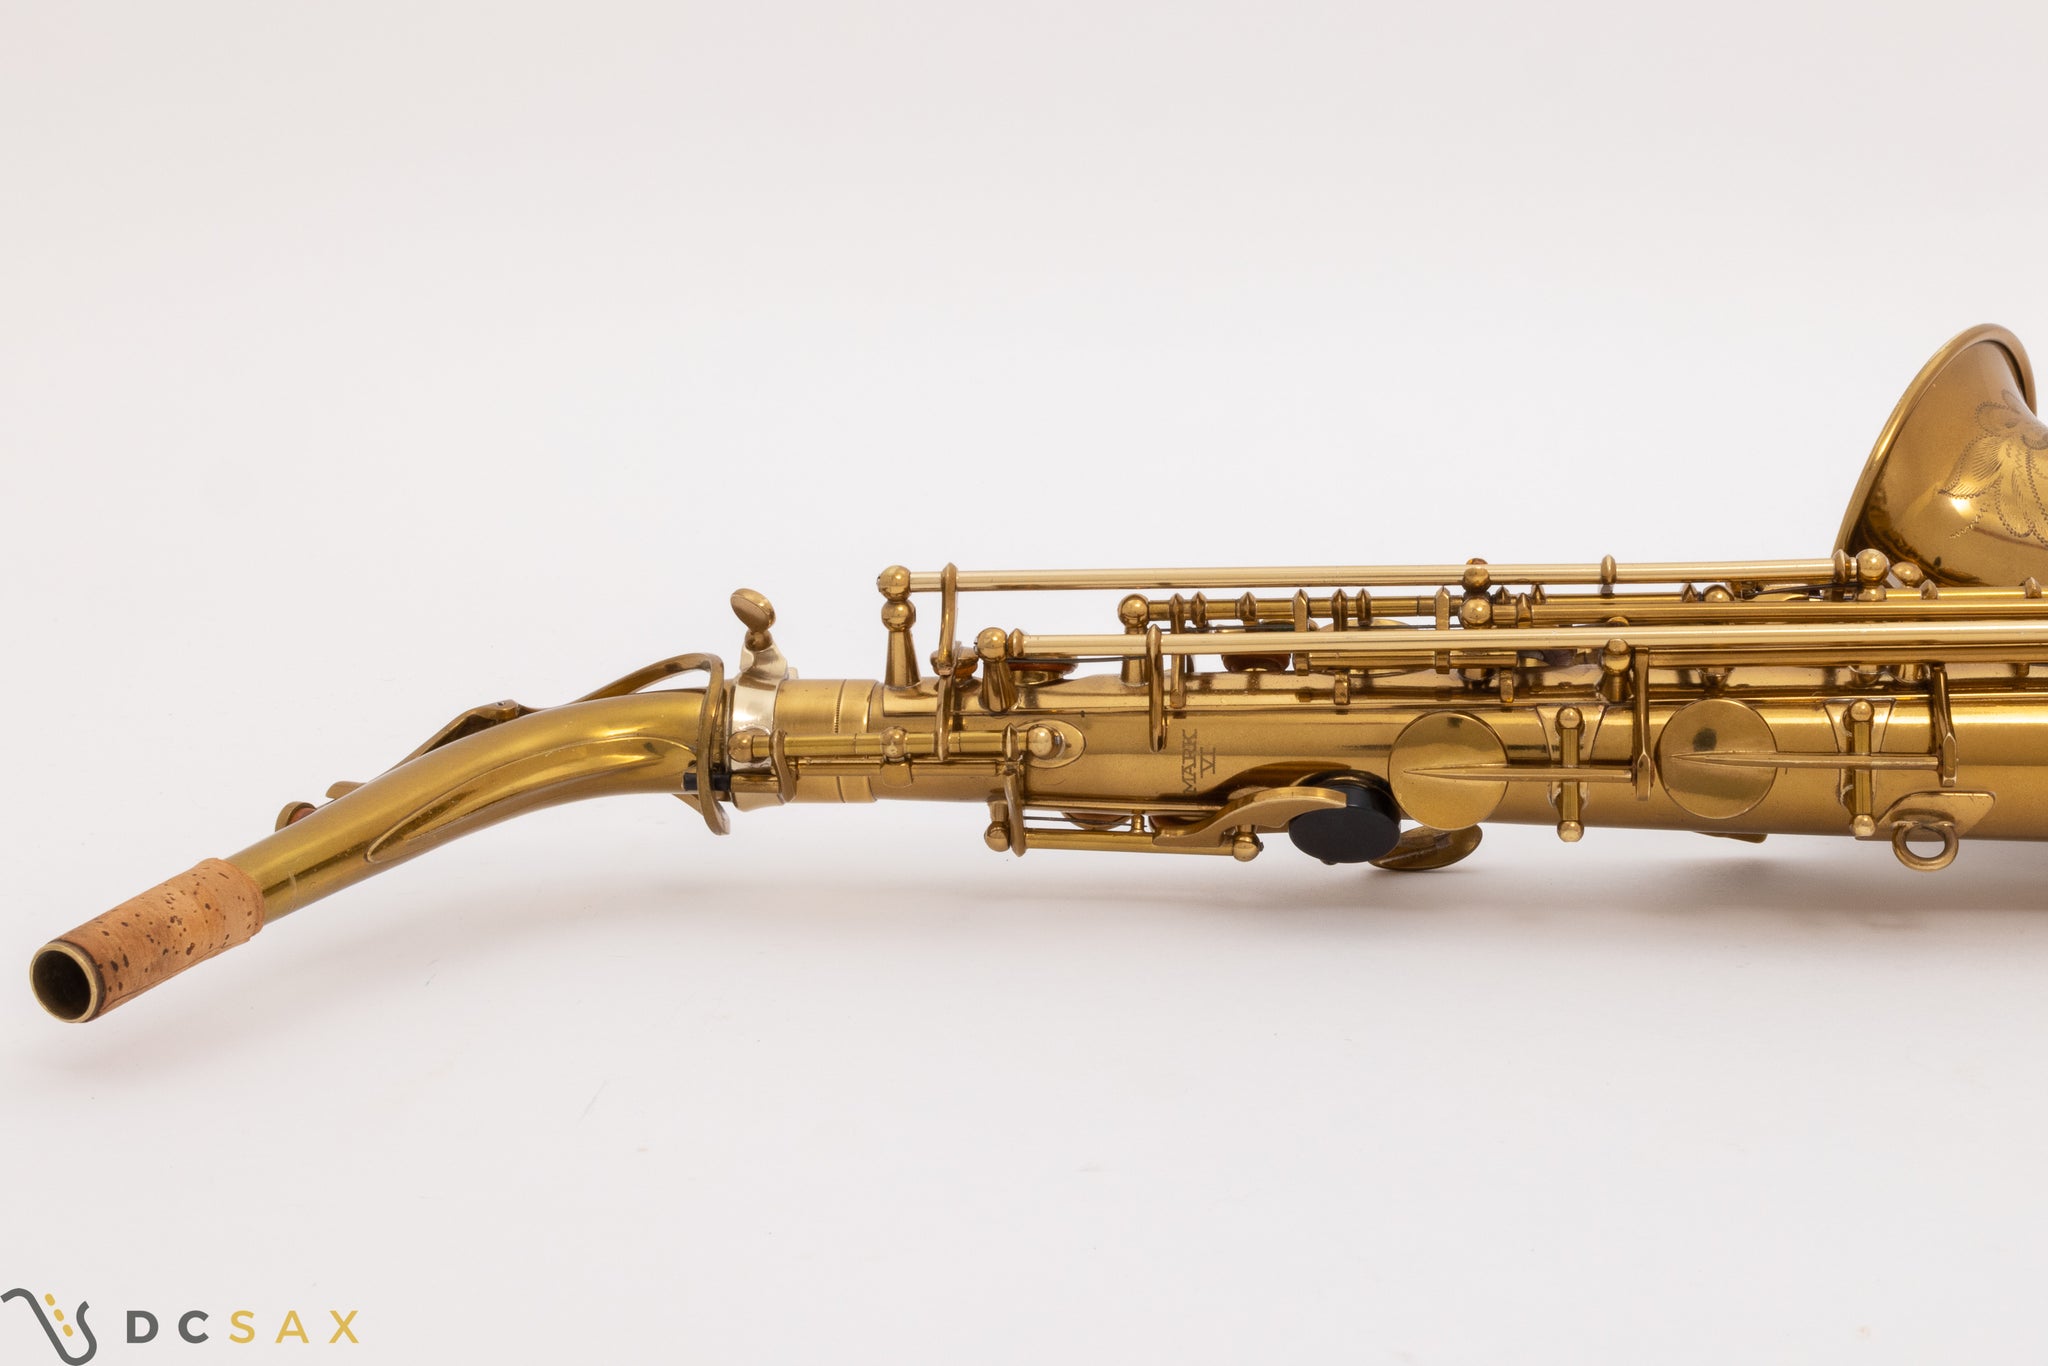 1955 Selmer Mark VI Alto Saxophone, 99%+ Original Lacquer, Near Mint